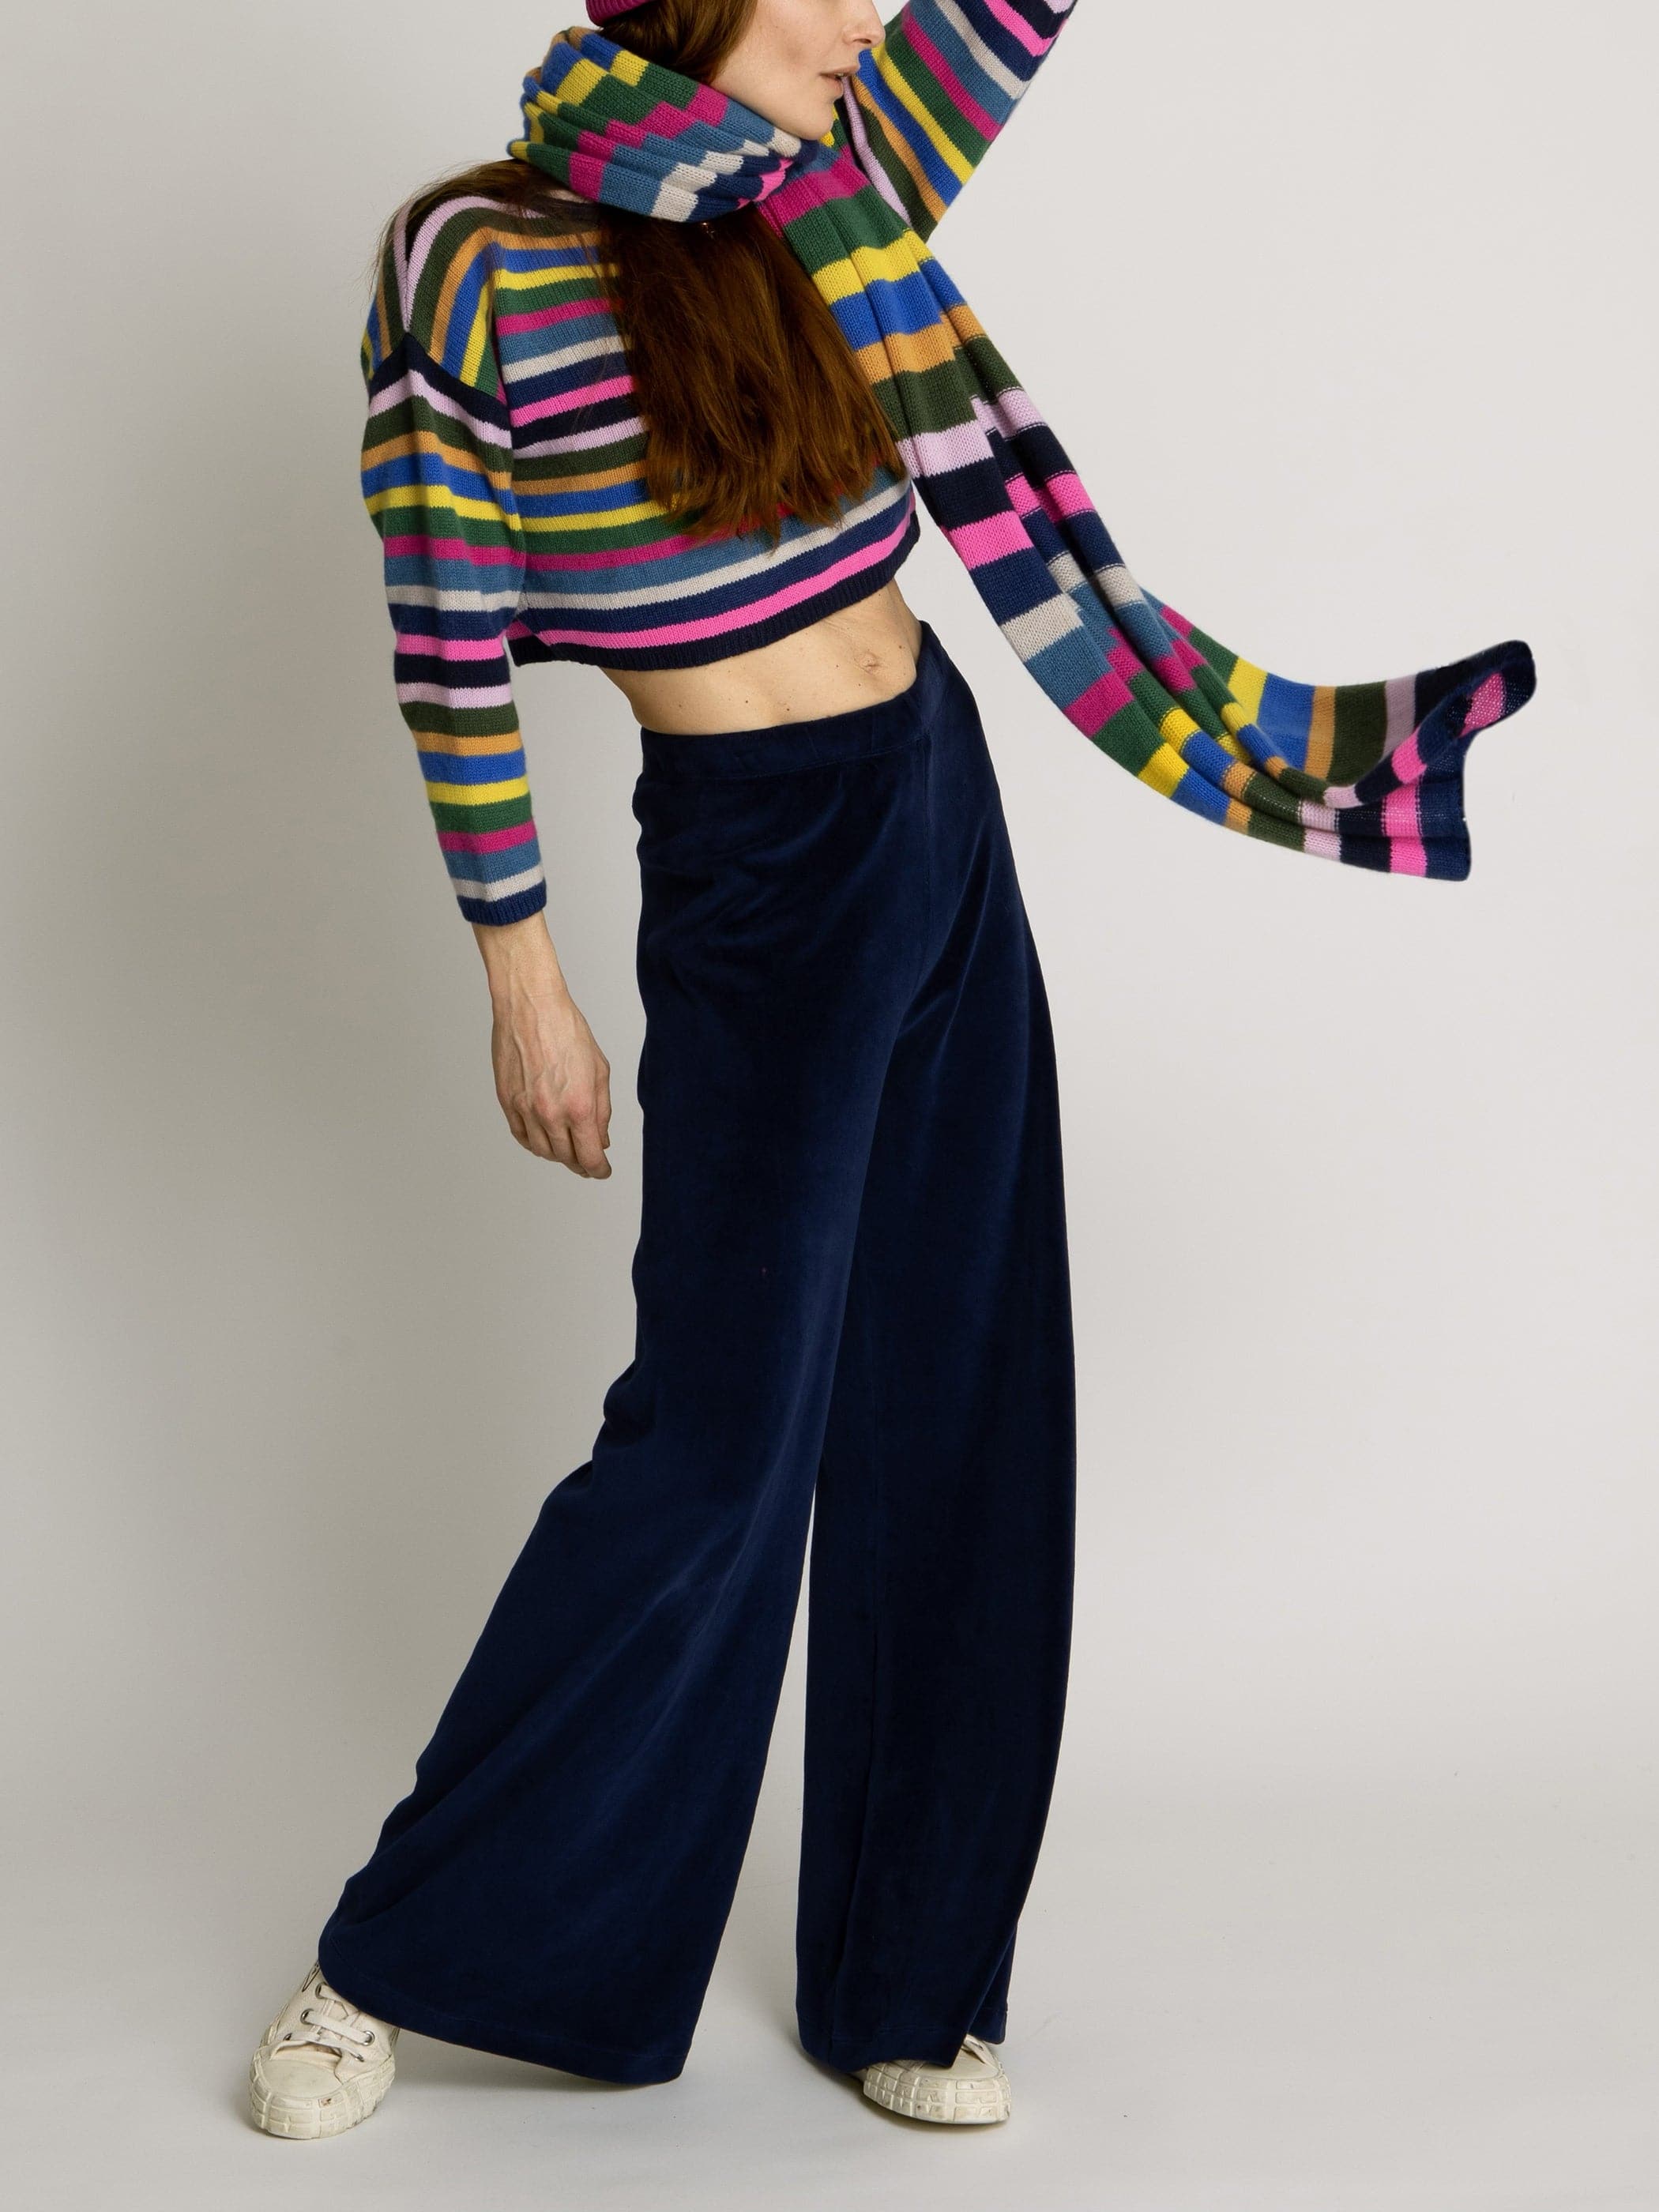 Zara Knit Pants M Striped Stretchy High Rise Kick Flare Bootcut Lettuce Hem  | eBay